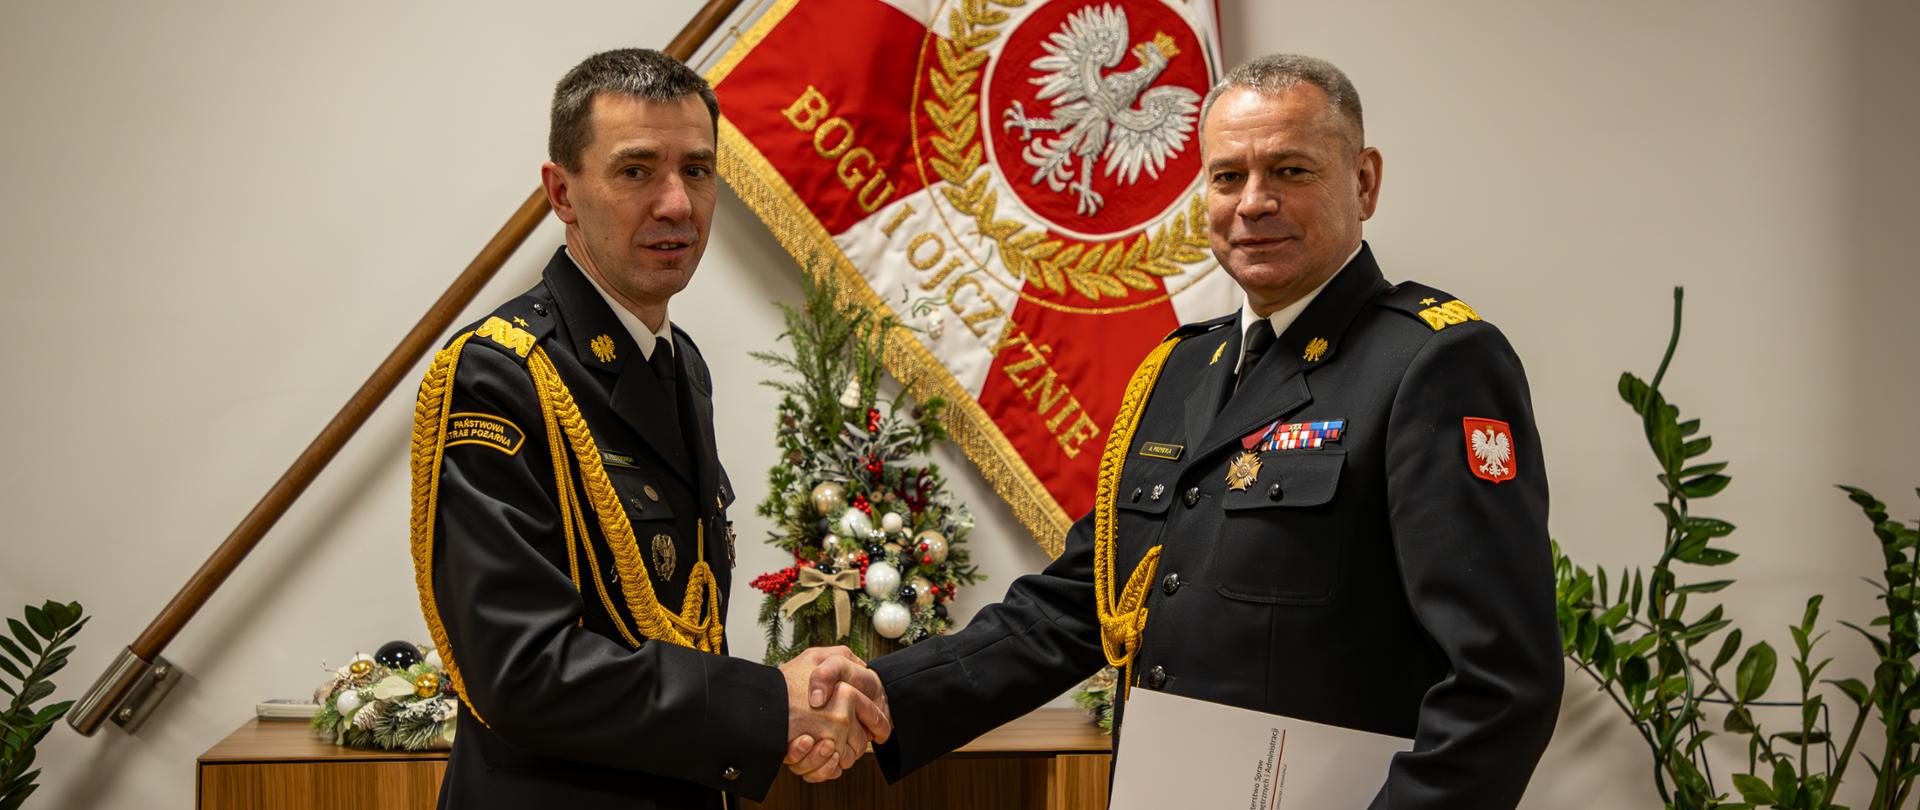 Ubrani w mundury galowe nadbrygadier Mariusz Feltynowski oraz nadbrygadier Arkadiusz Przybyła ściskają dłonie. W tle sztandar PSP oraz dekoracje. 